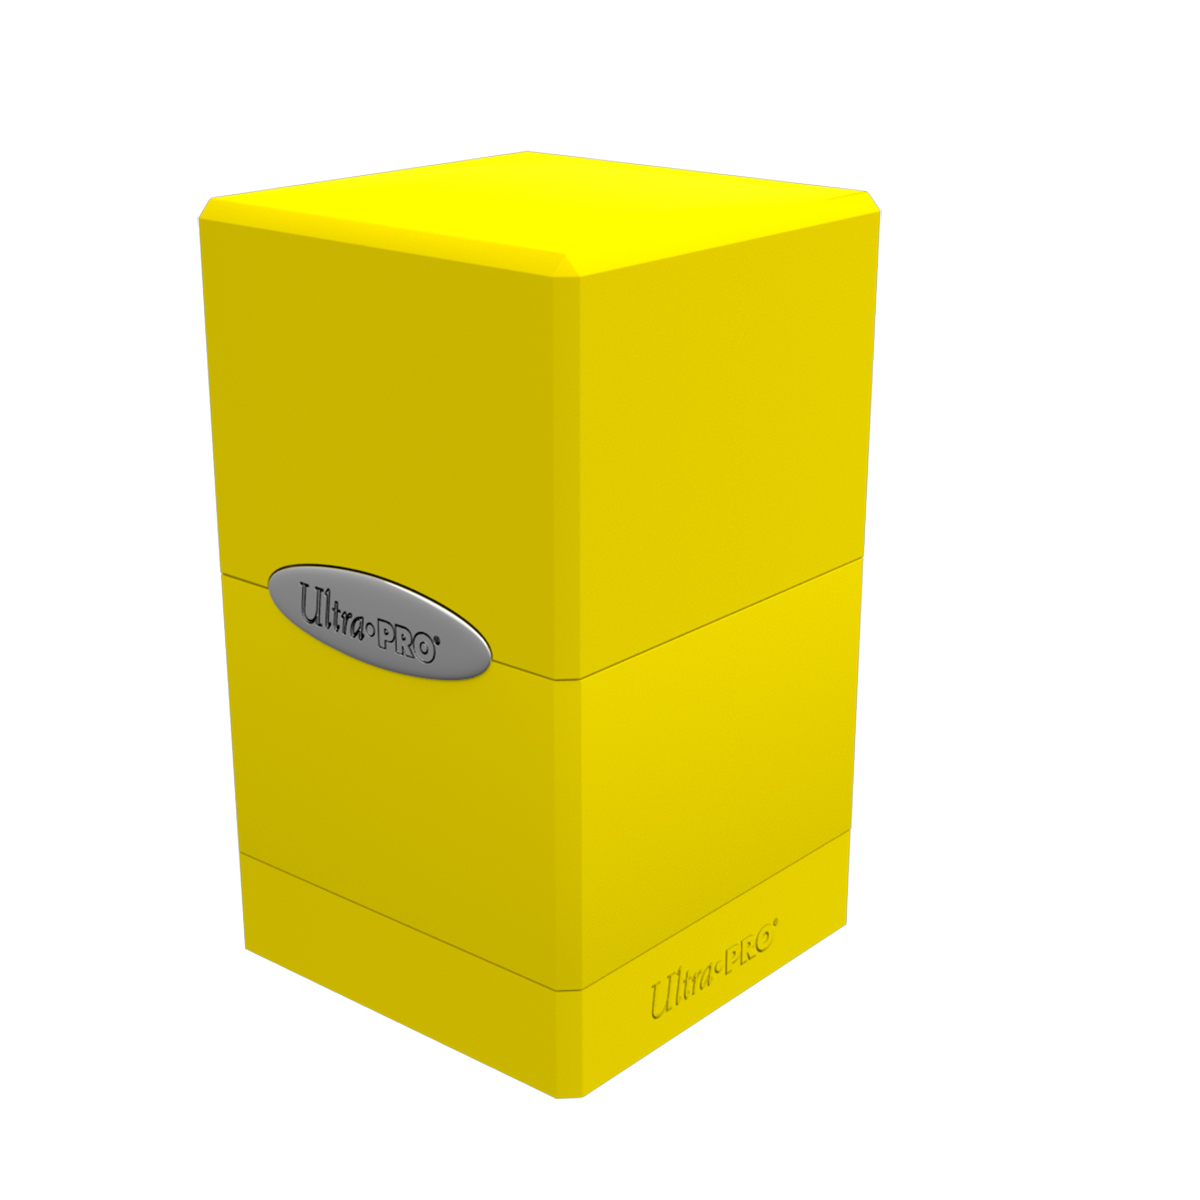 Коробочка Ultra Pro Satin Tower Lemon Yellow для карт MTG, Pokemon коробочка ultra pro satin tower metallic rose gold для карт mtg pokemon